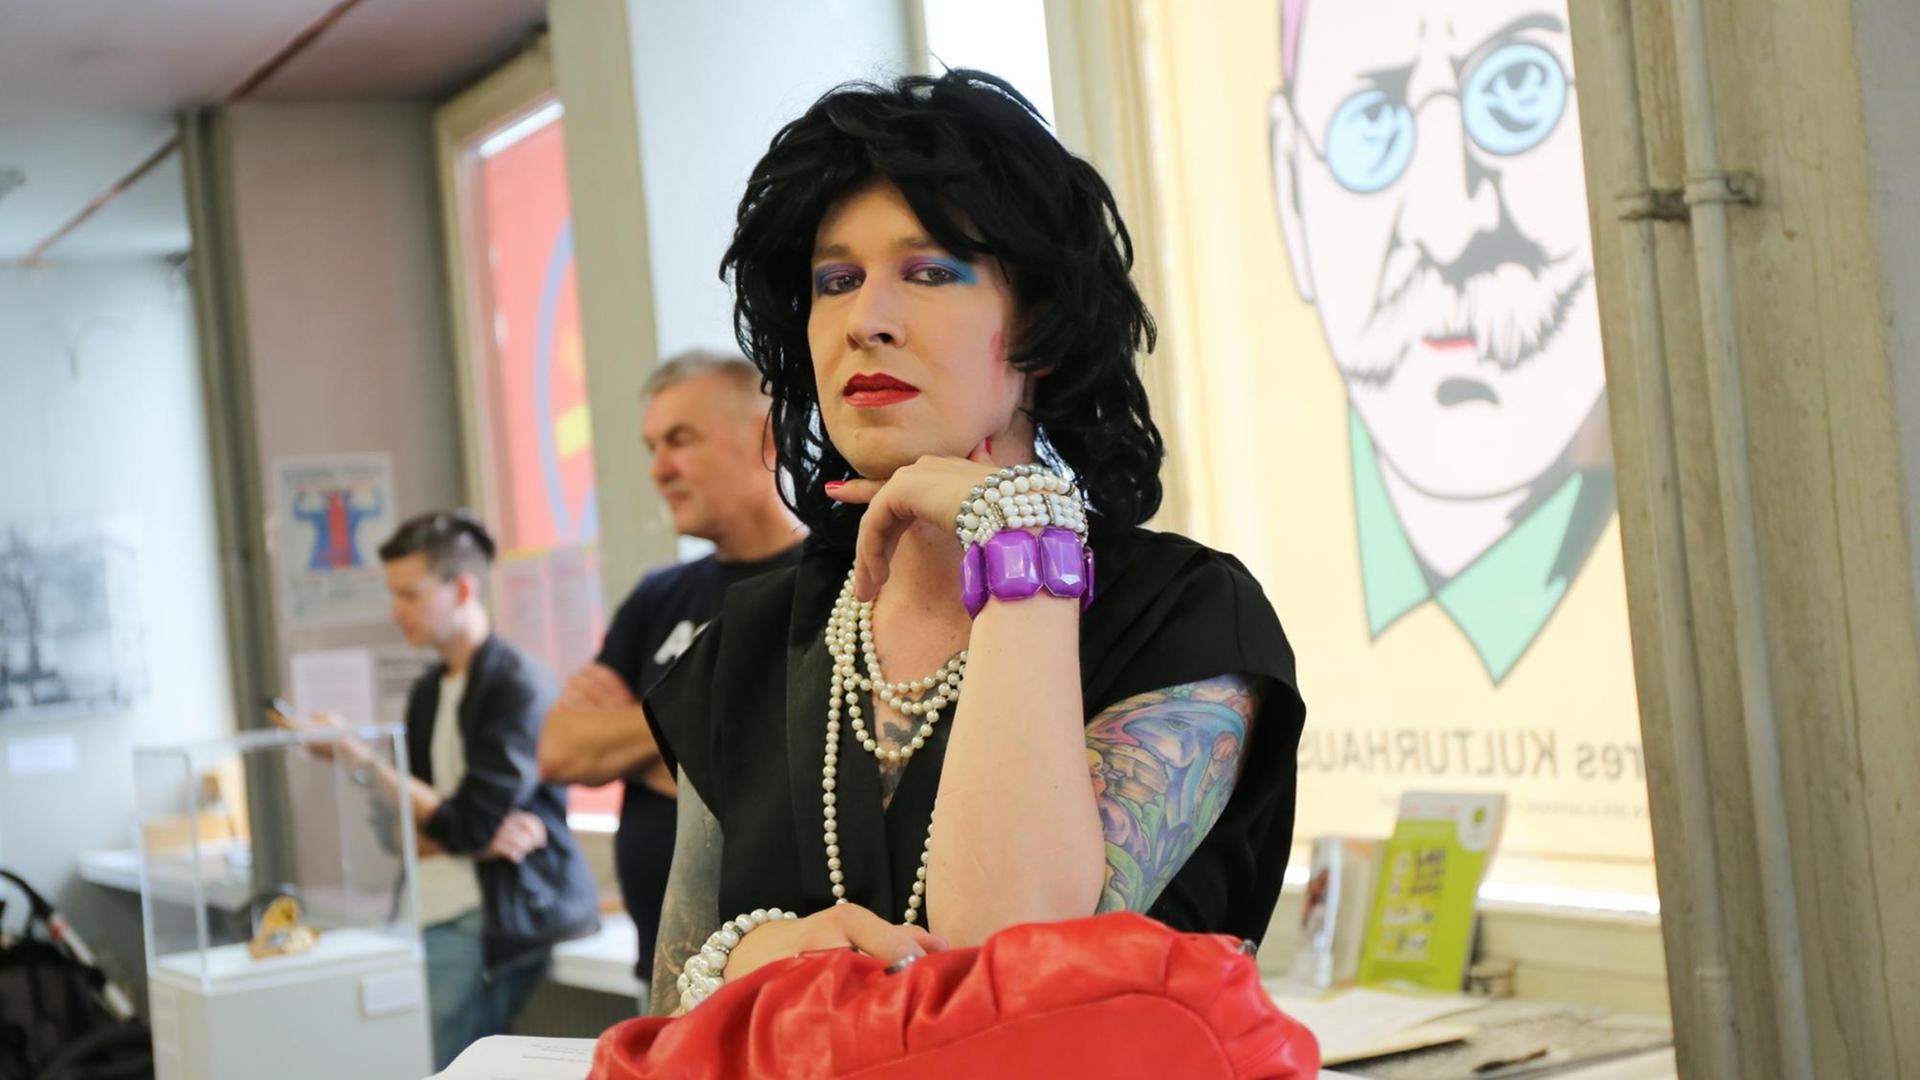 Die queere Aktivistin und Geschlechterforscherin Patsy l'Amour laLove